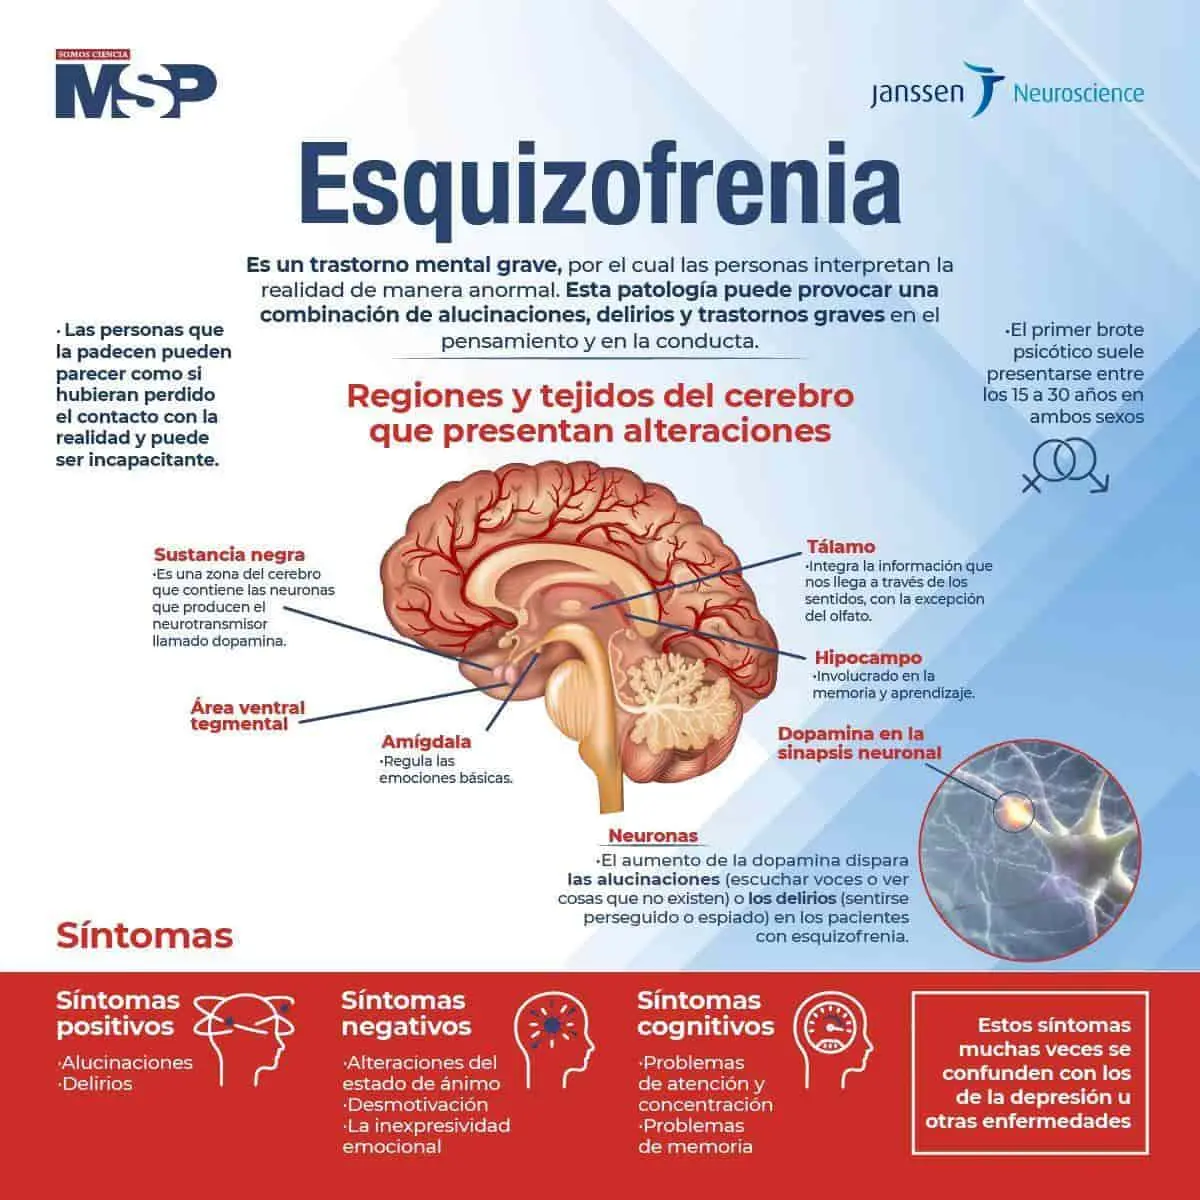 enfermedades de la esquizofrenia inteligencias multiples - Qué dice la neurociencia de la esquizofrenia